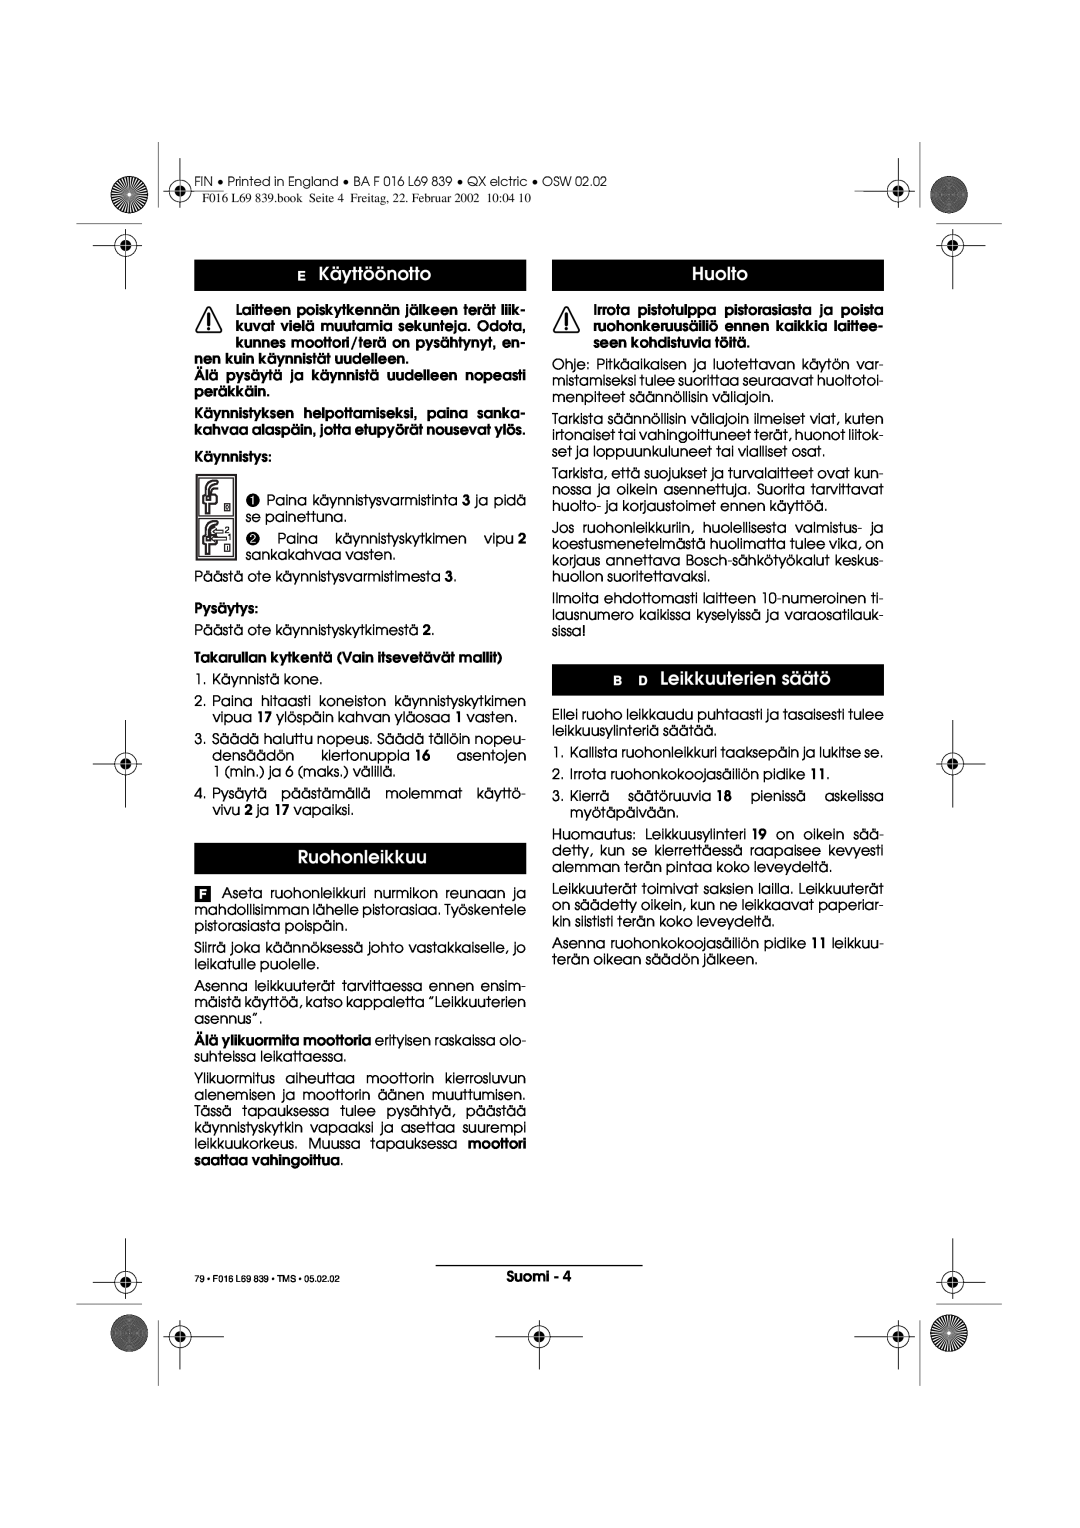 Atco QX operating instructions Käyttöönotto, Huolto, Ruohonleikkuu, B D Leikkuuterien säätö, 79 F016 L69 839 TMS 